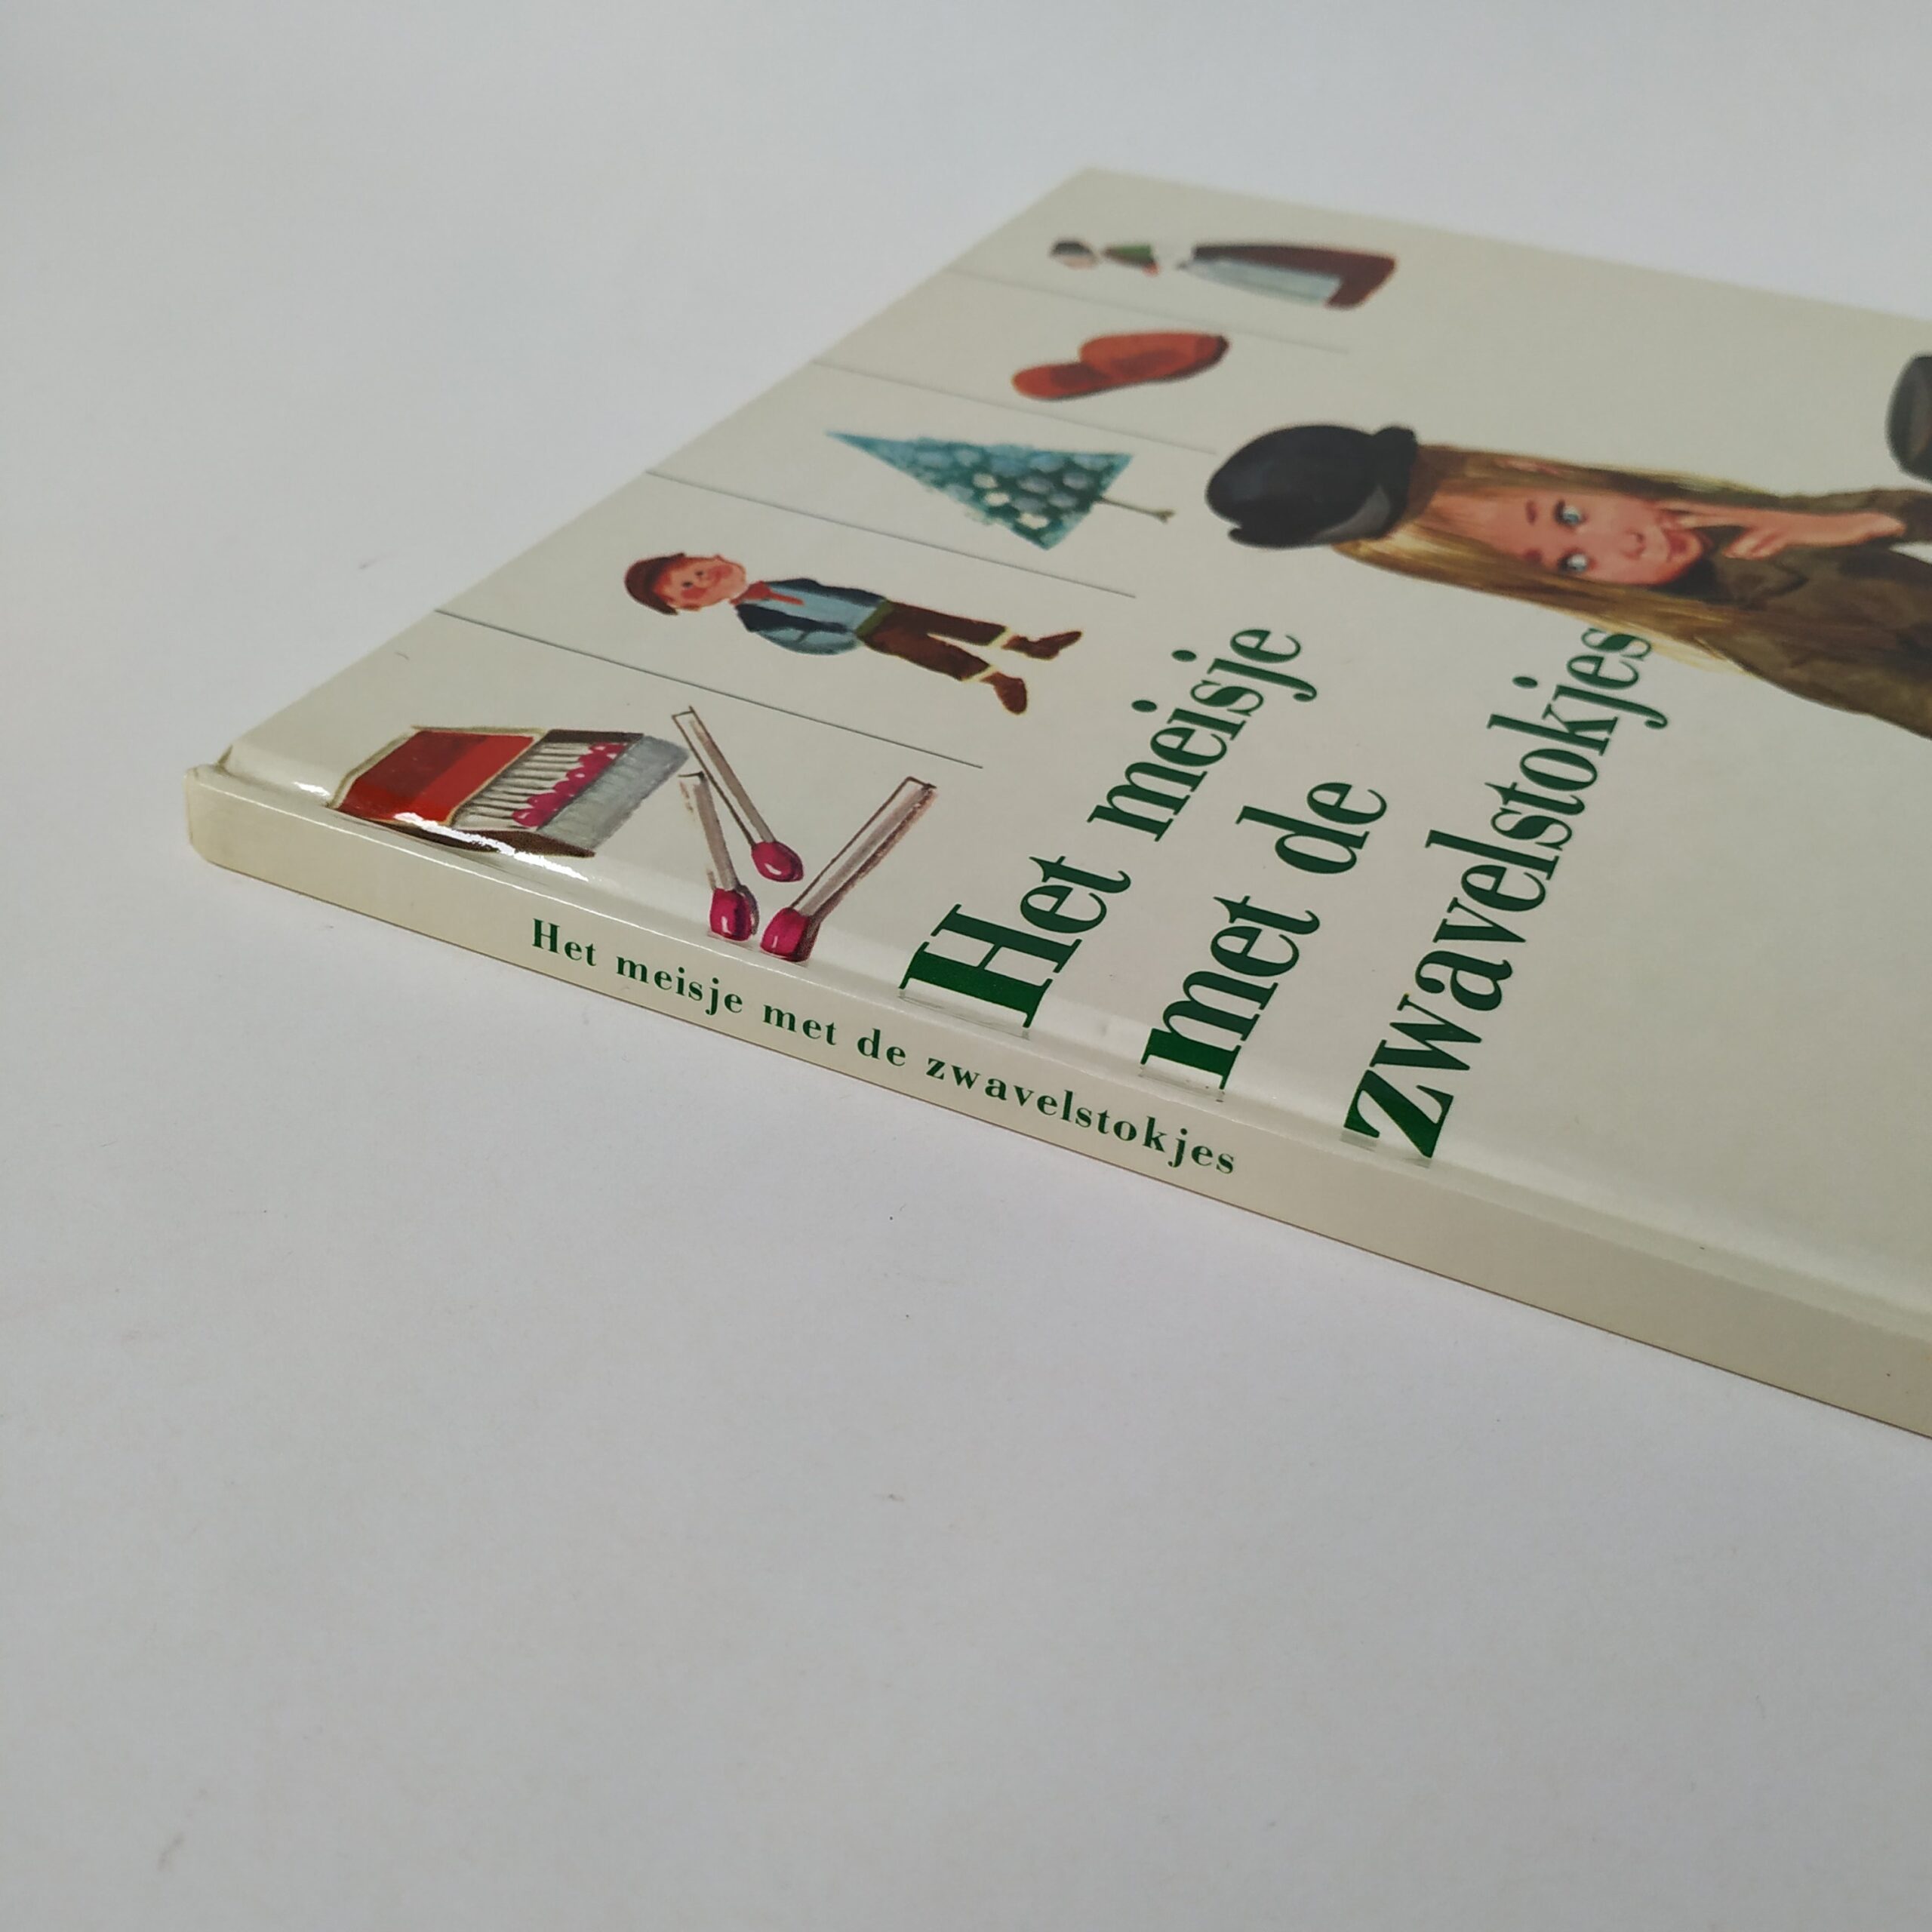 Boek Het meisje met de zwavelstokjes uit 1976 (2)